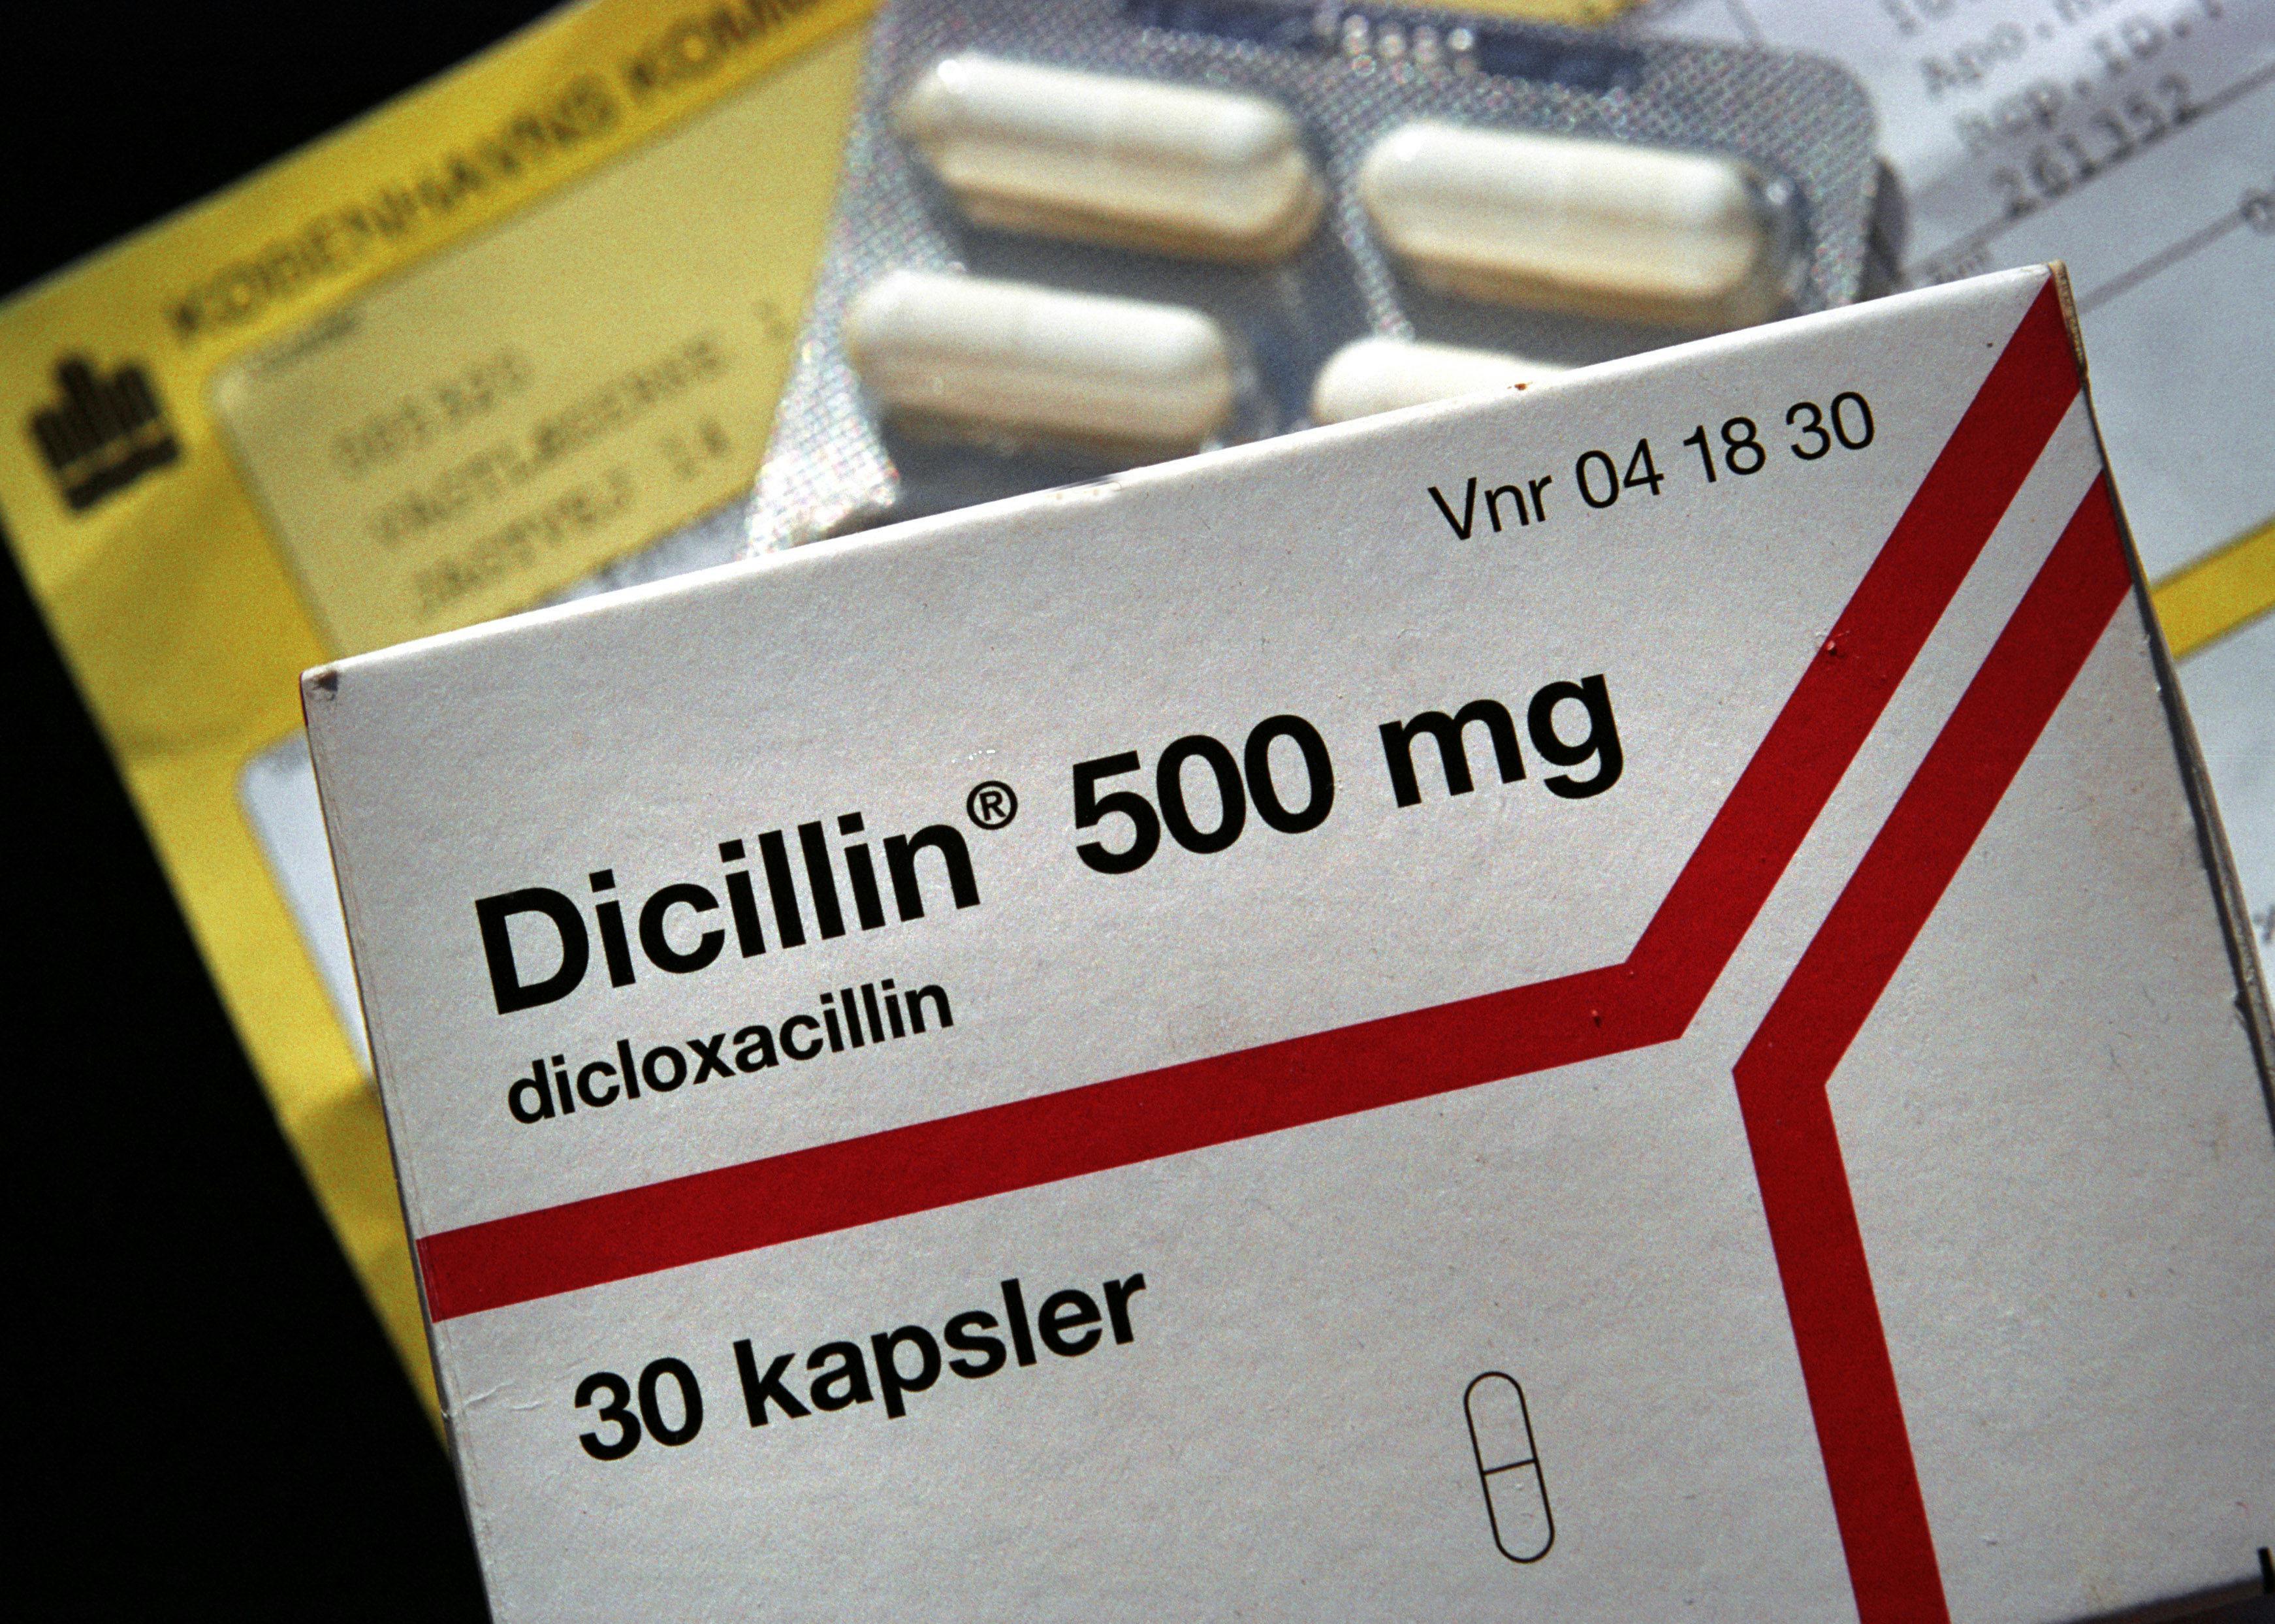 Antibiotika-medicin fra Dicillin blev tidligere på ugen kaldt tilbage i Danmark. Nu kalder Island antibiotikatmærket Staklox, der kommer&nbsp;i de samme kapsler som Dicillin, tilbage.